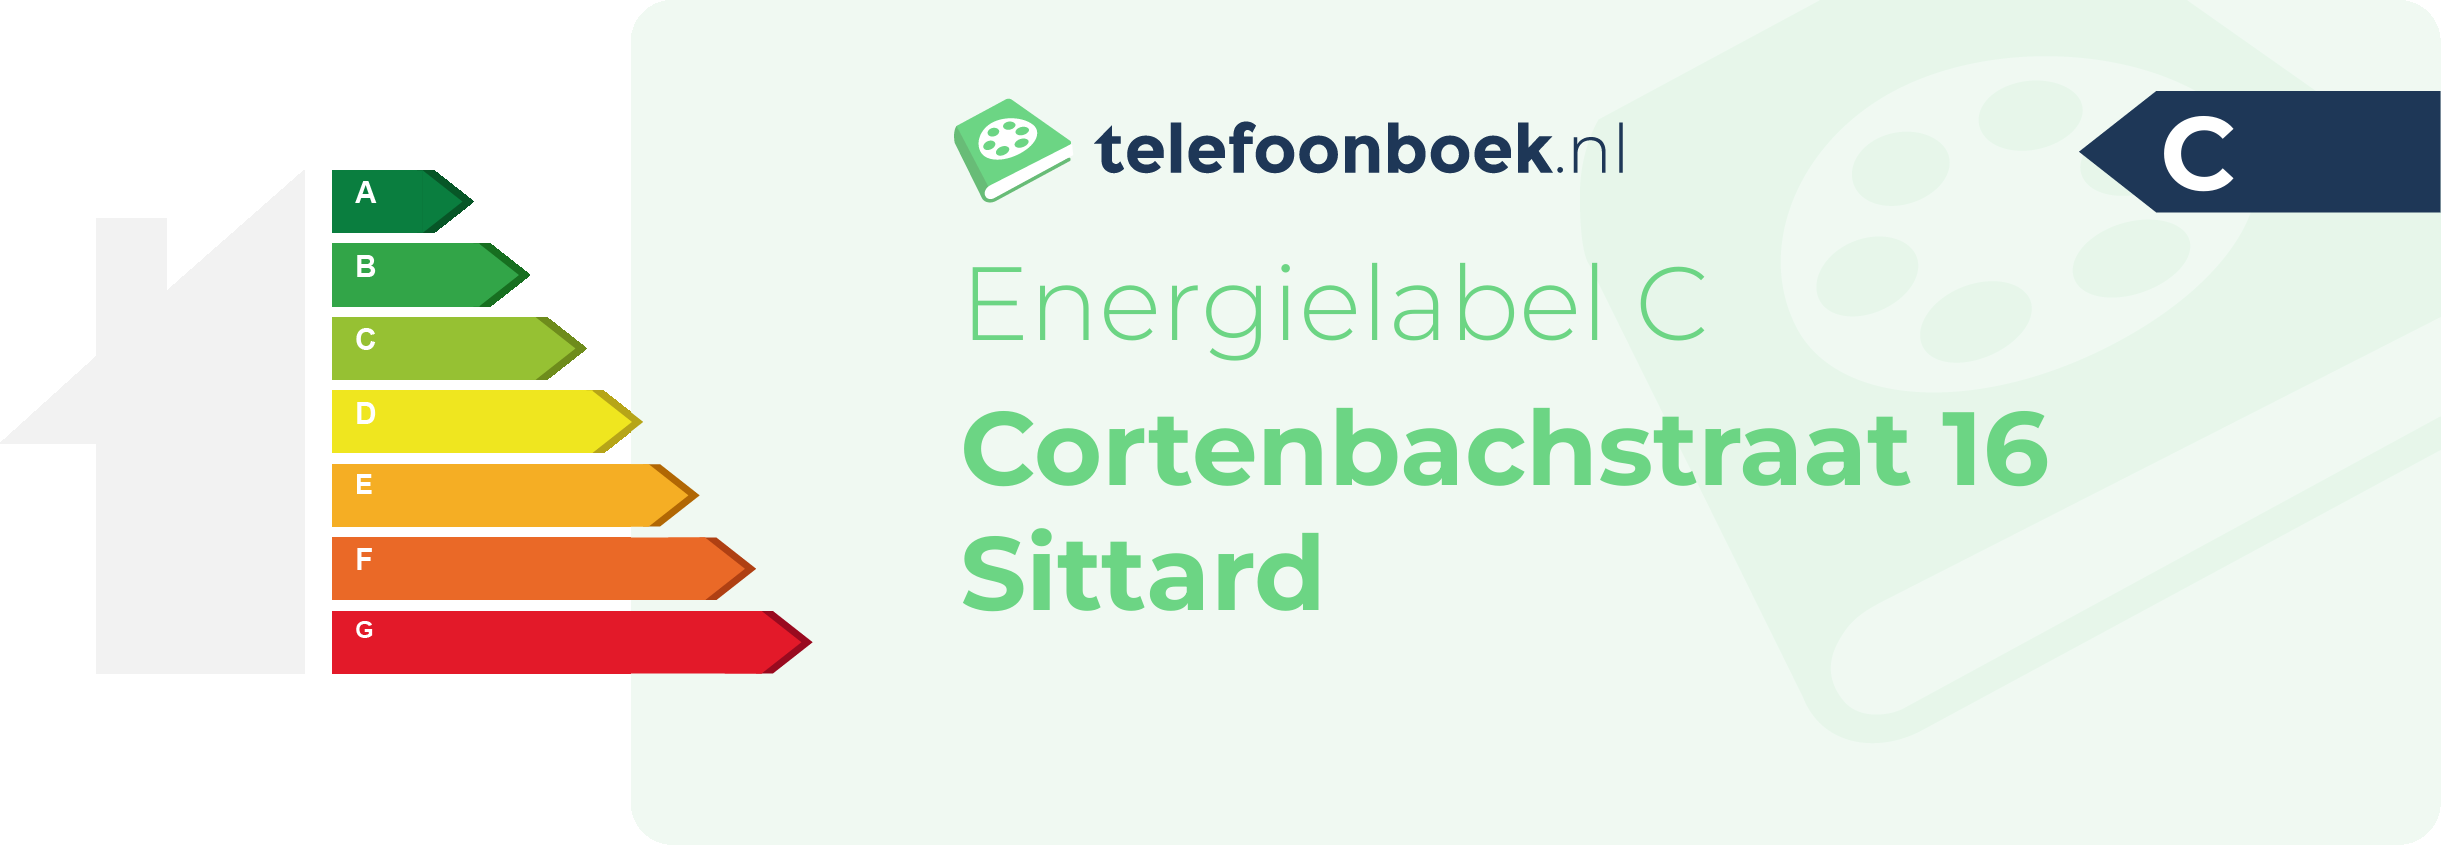 Energielabel Cortenbachstraat 16 Sittard